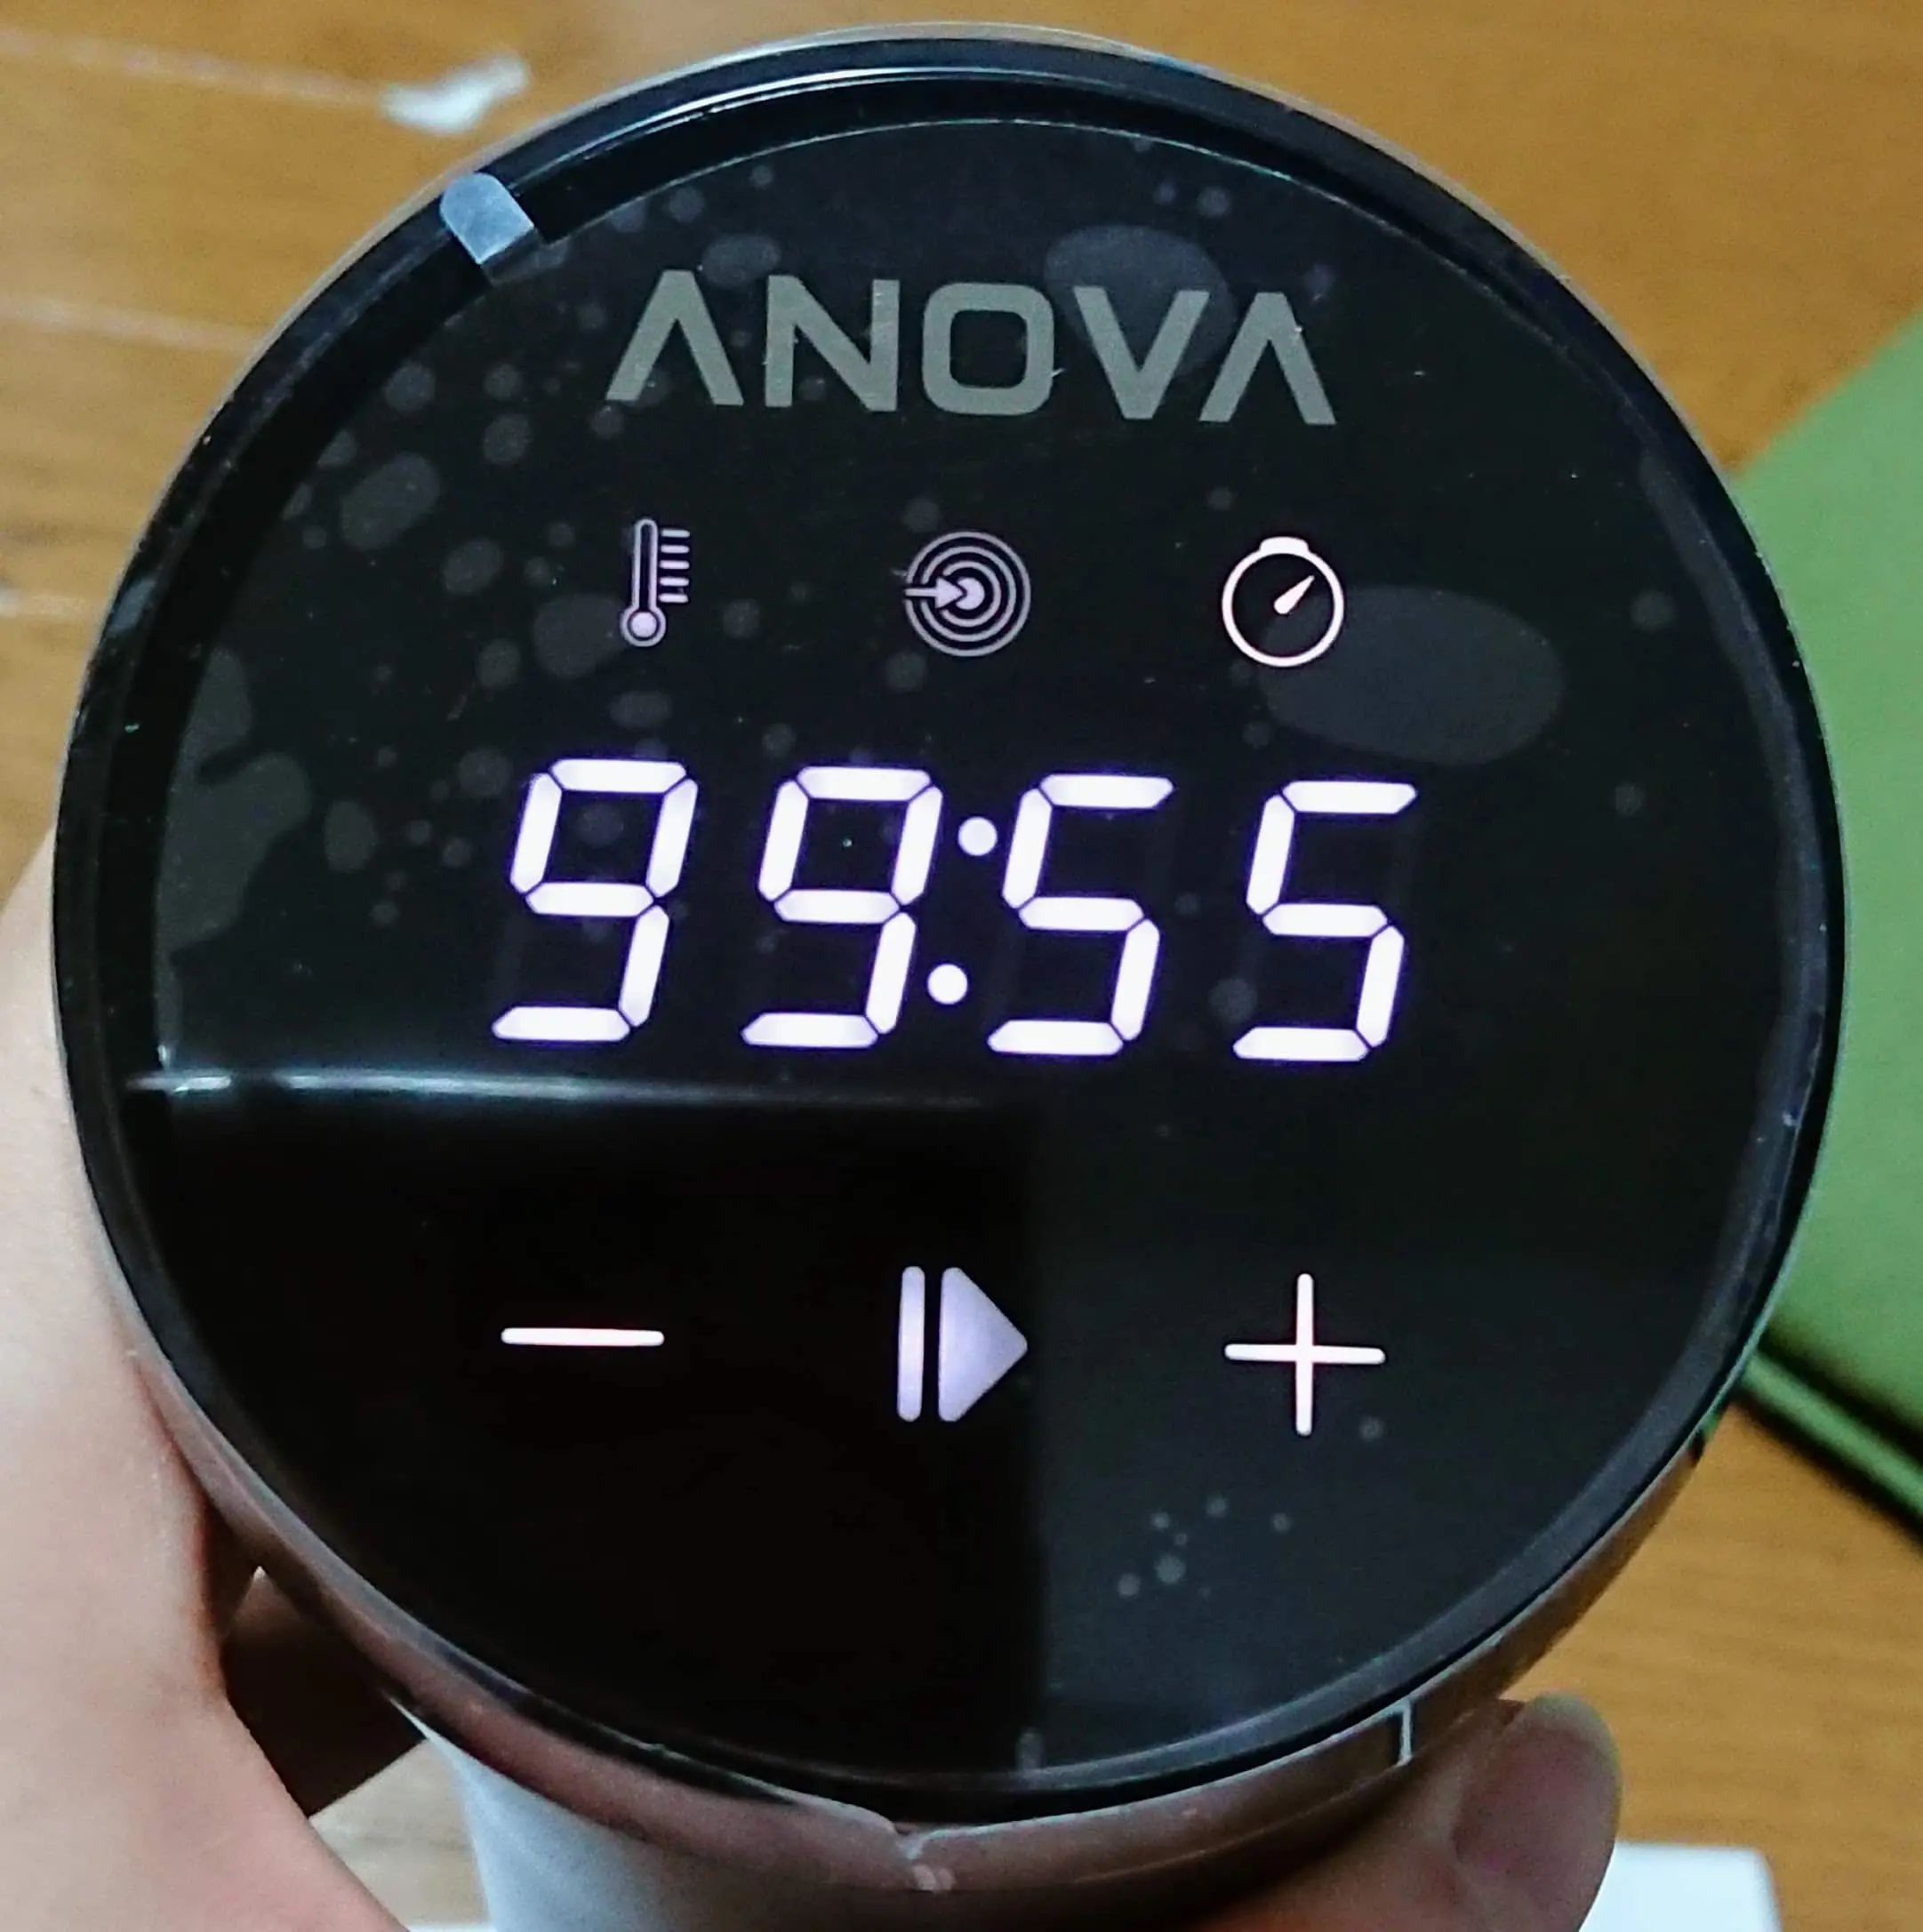 Anova Nano 最大加熱時間は99時間55分